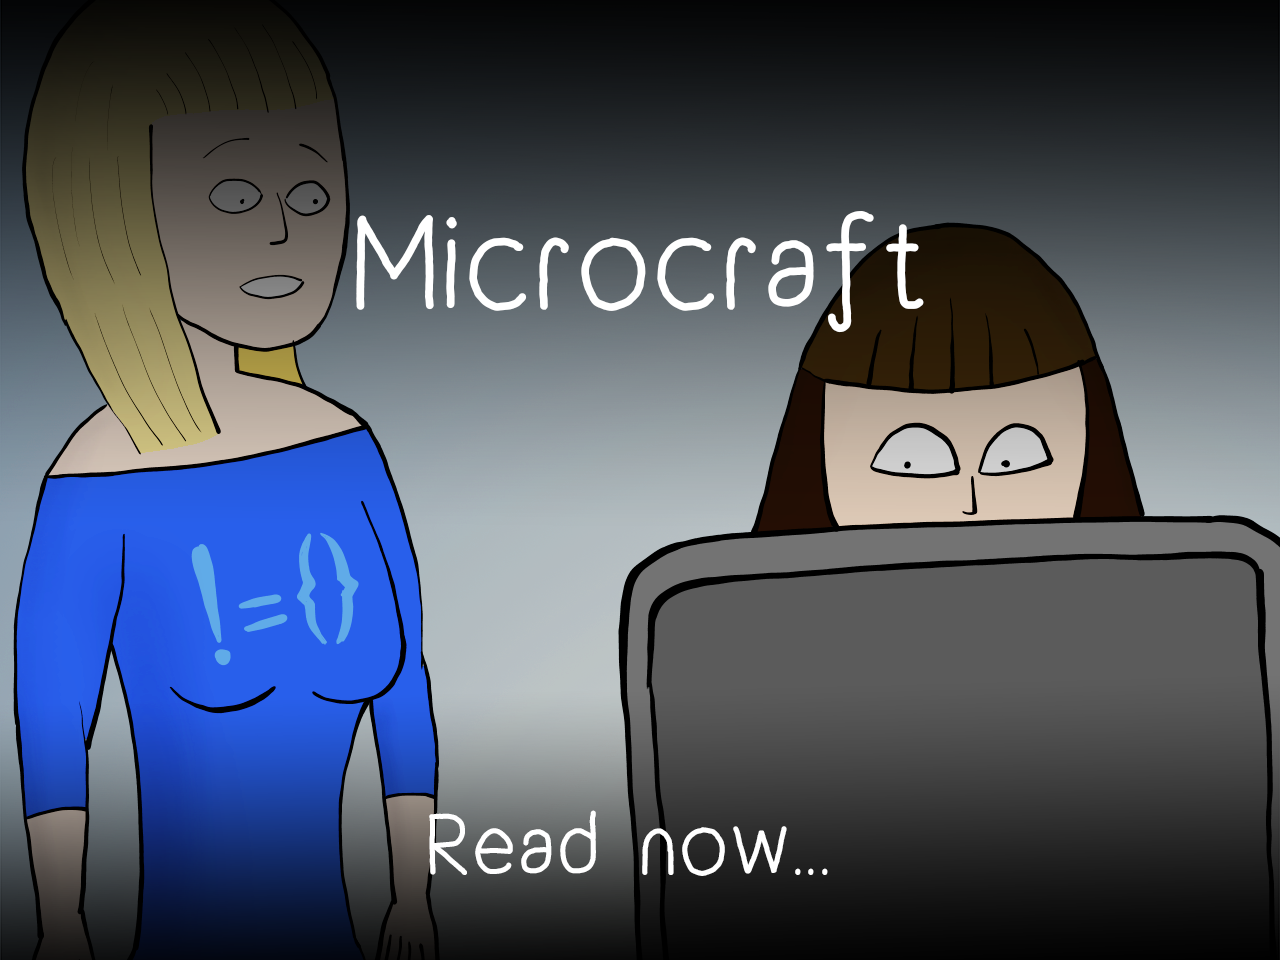 Microcraft